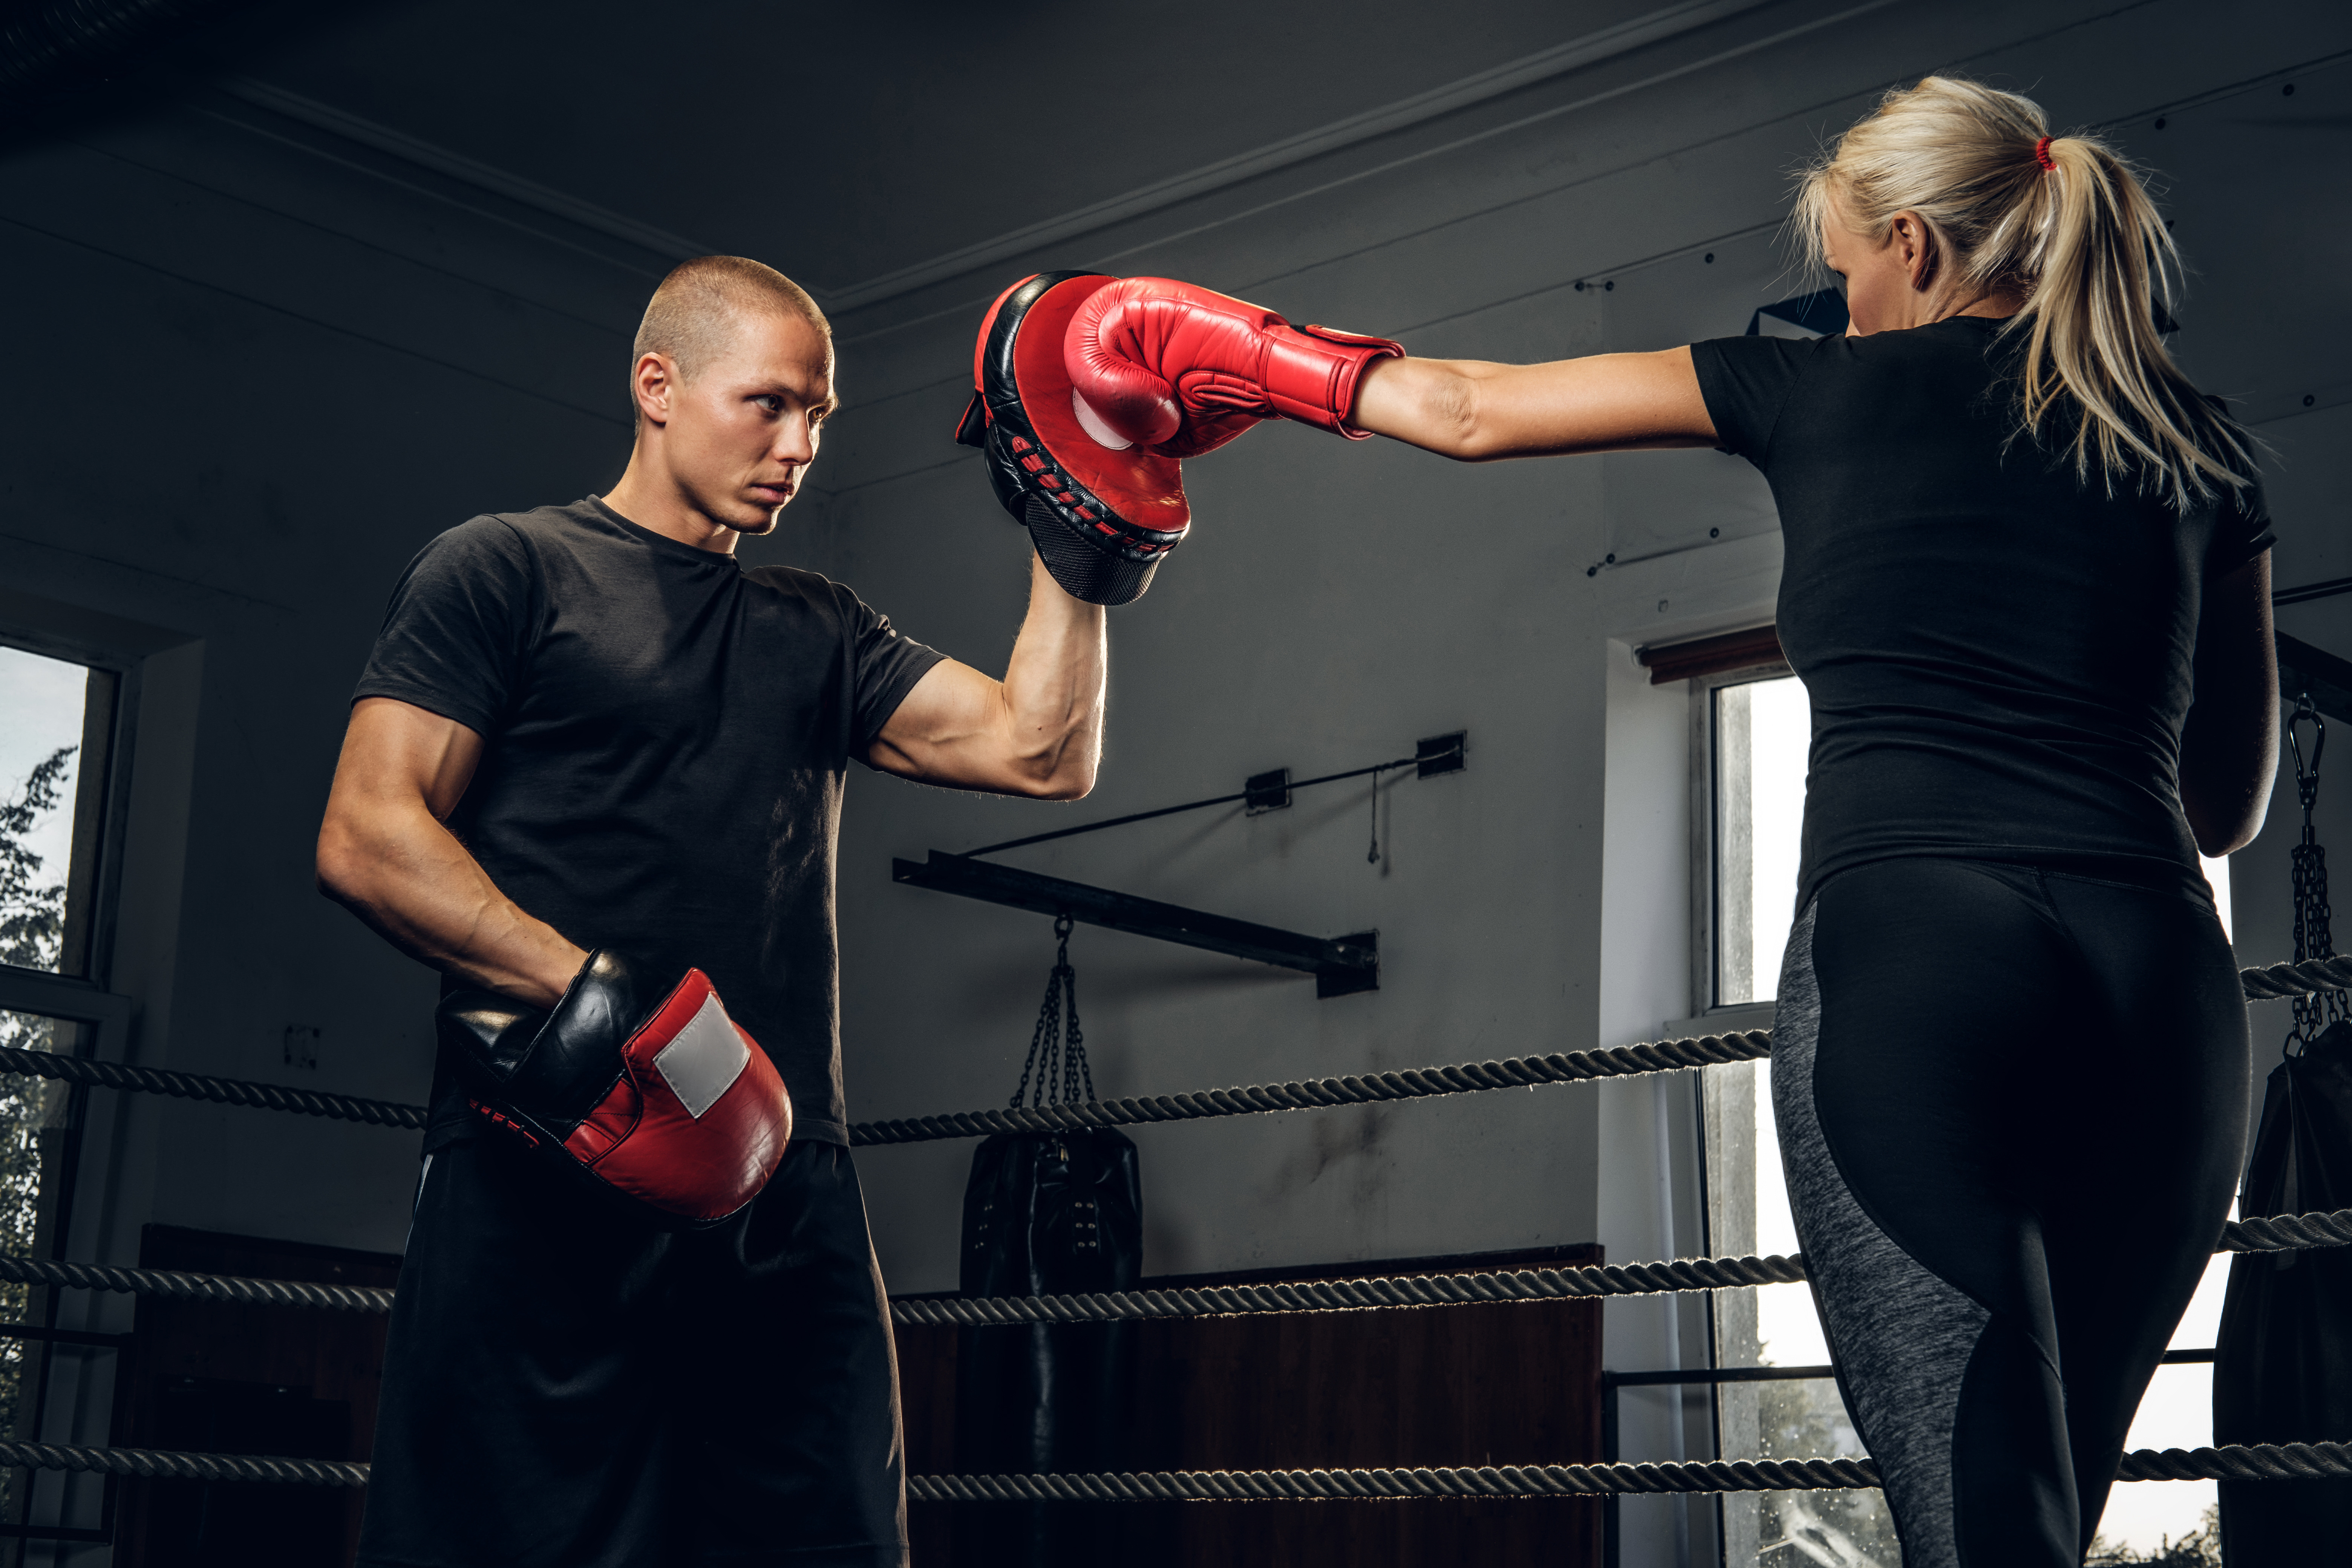 Las Manoplas en el boxeo - Importancia y Perfección de Tecnicas 